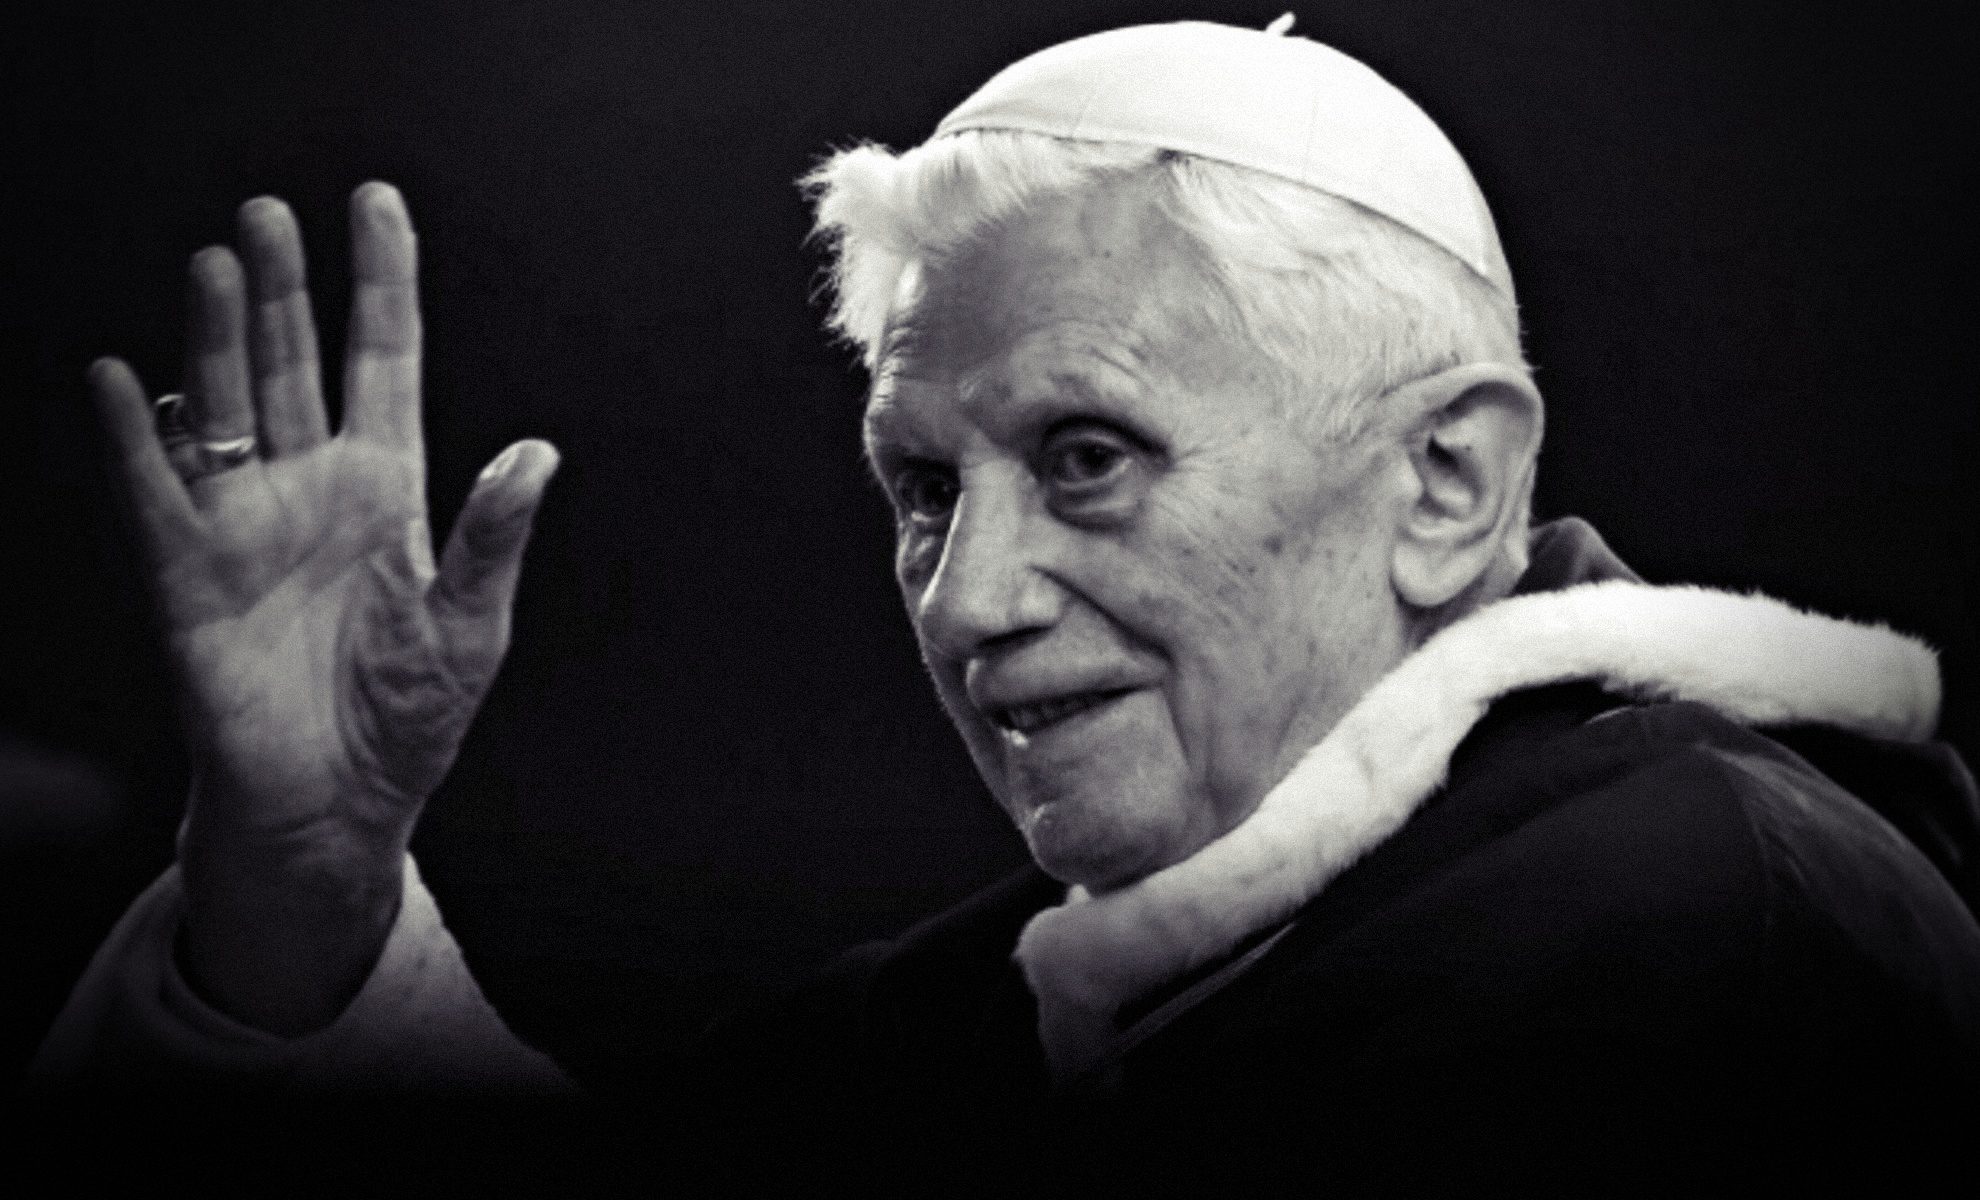 Abdykacja i śmierć Benedykta XVI to koniec Europy, jaką znaliśmy! Ks. prof. Kobyliński w IPP TV